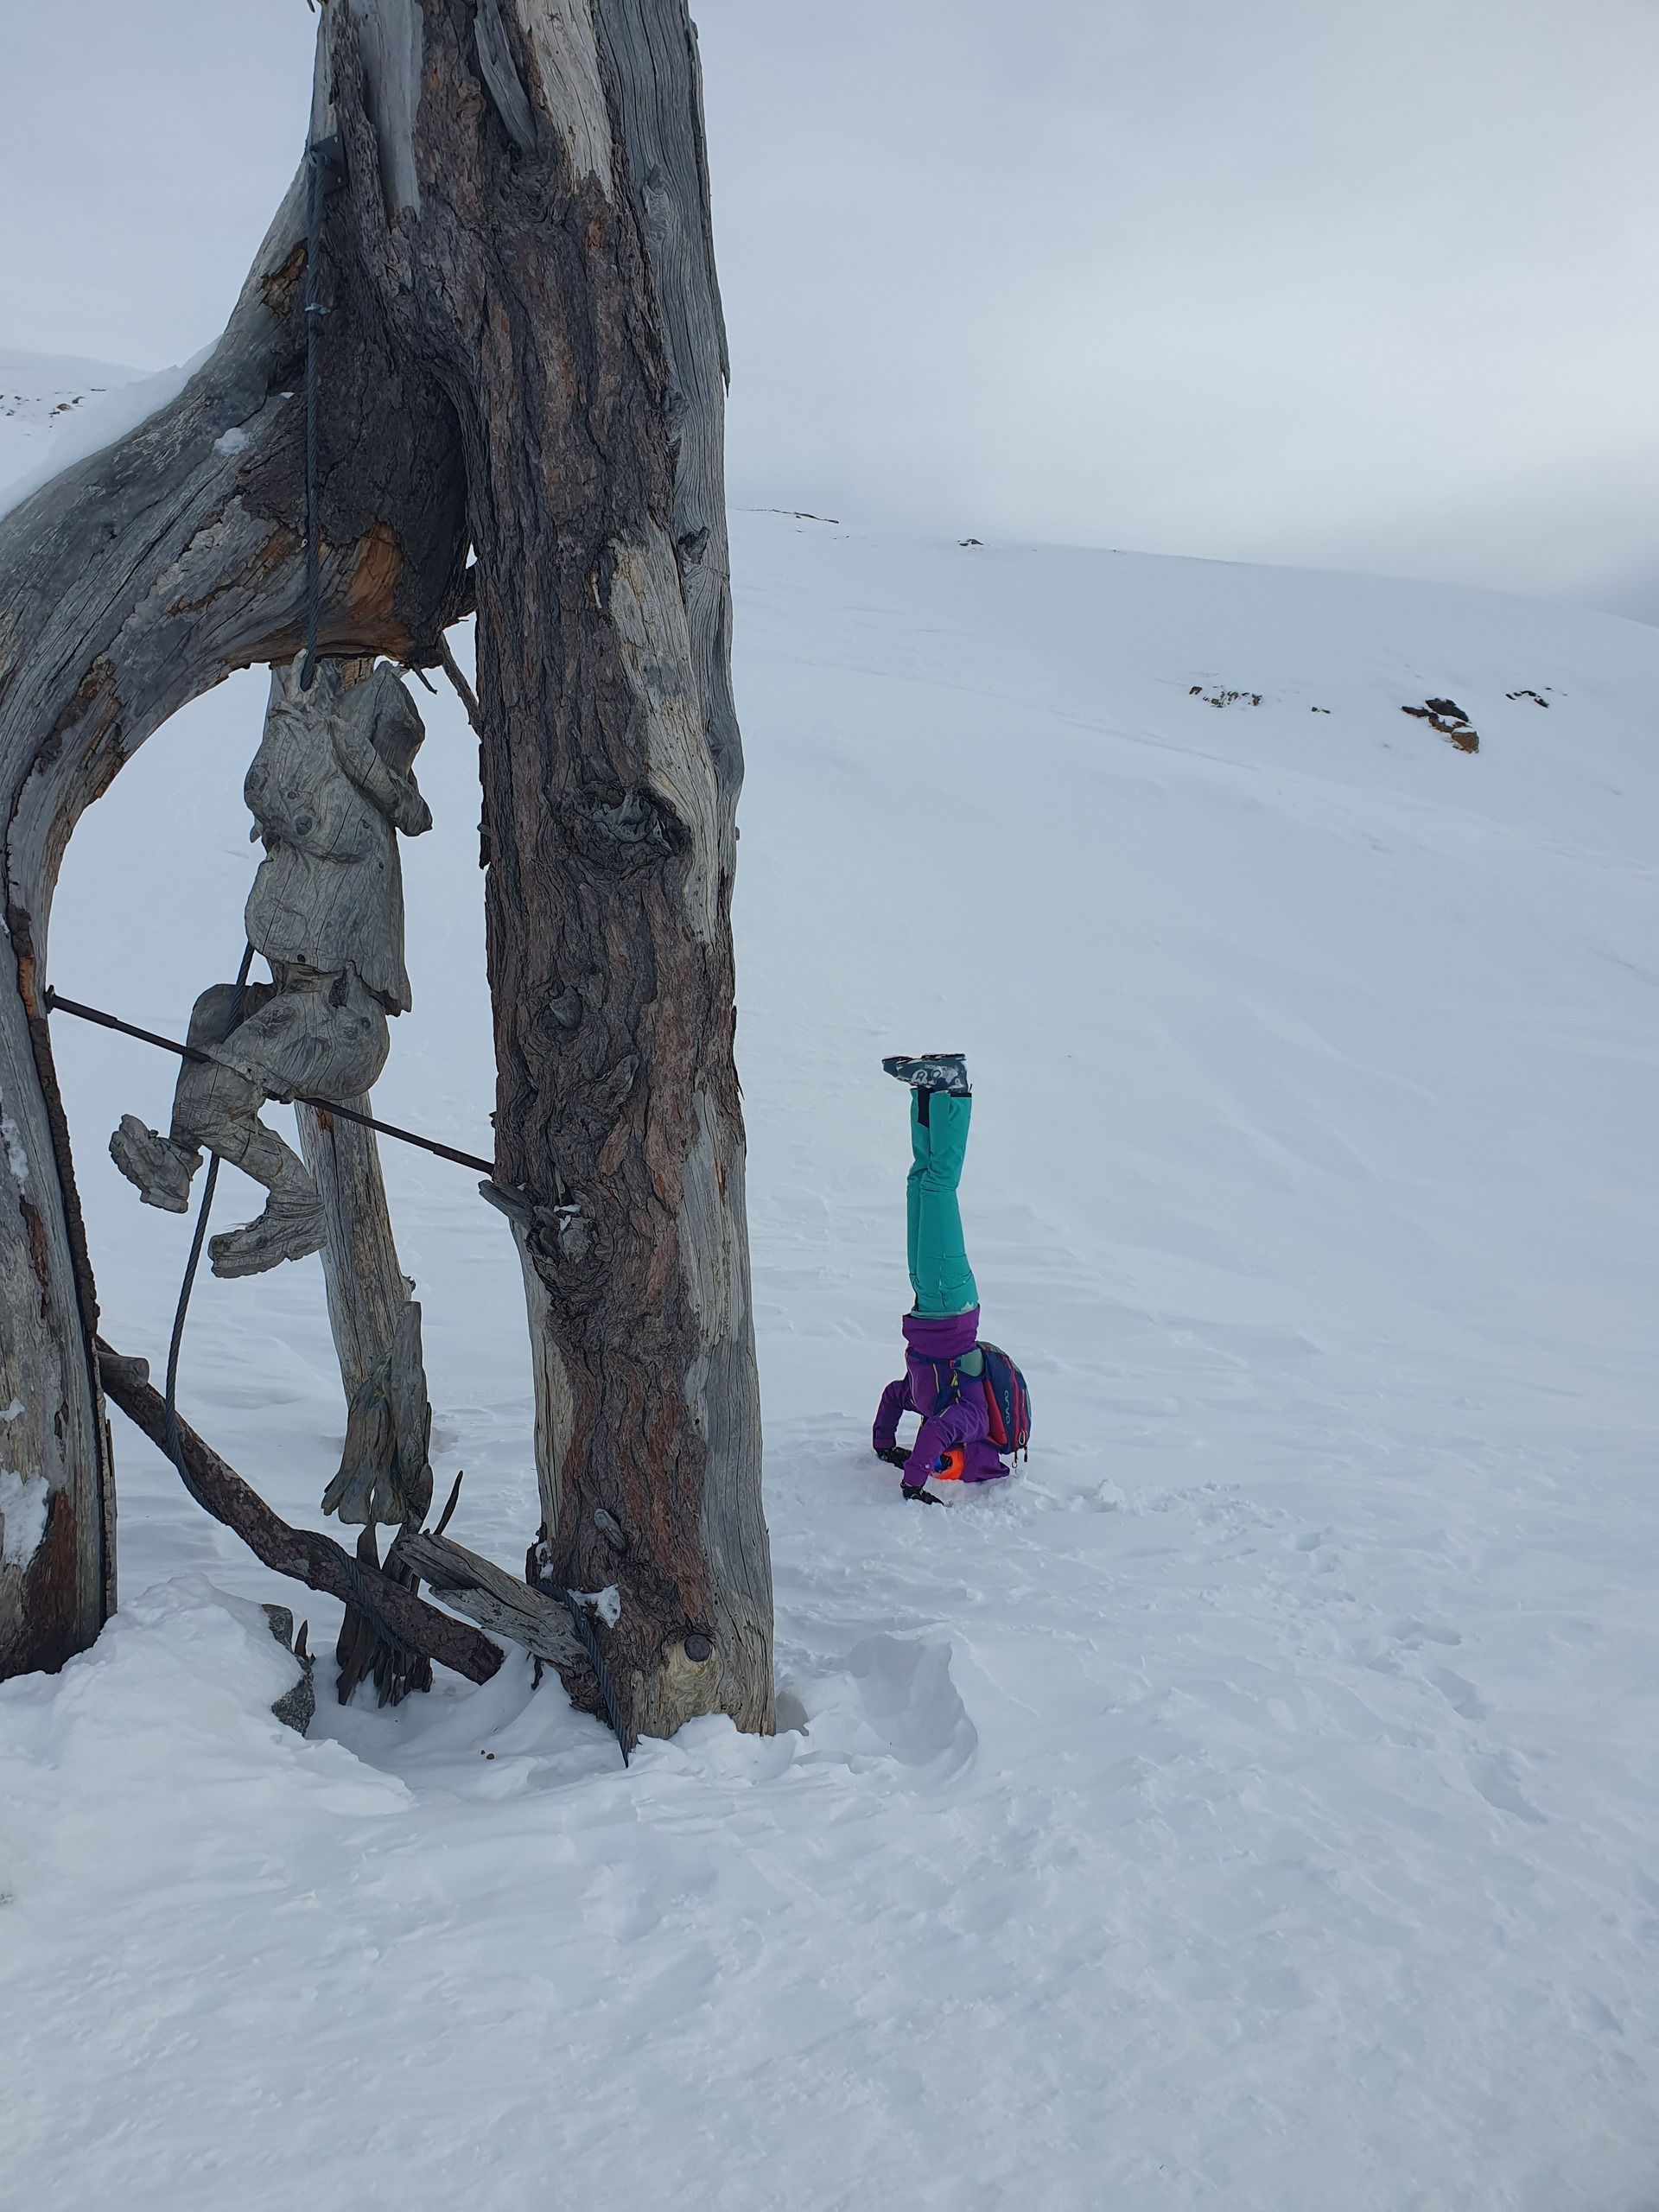 Nos encontramos con esta curiosa escultura de un escalador tallada en un tronco de árbol. A Bea le trae de cabeza